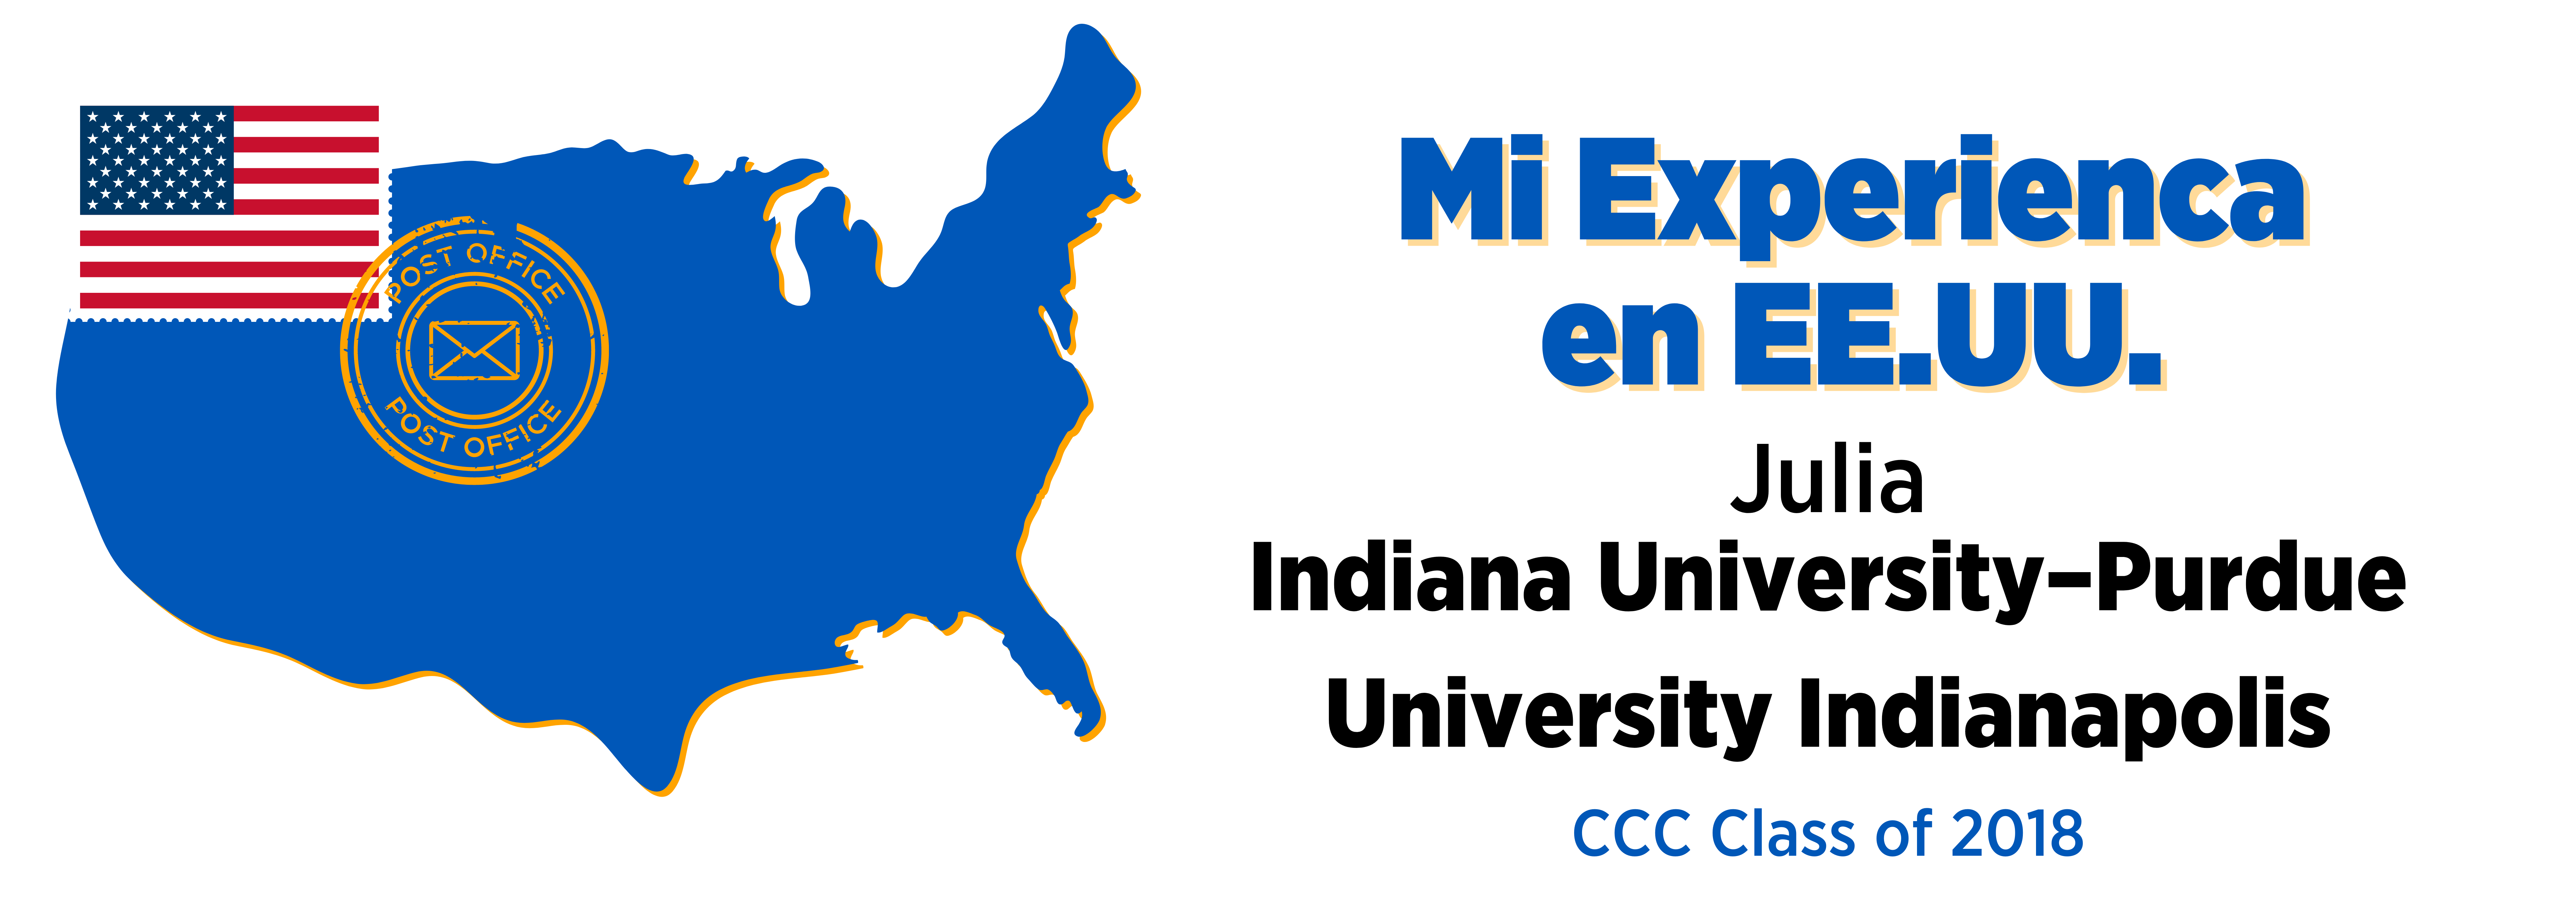 Mi Experiencia en EE.UU.: Julia & Indiana University–Purdue University Indianapolis